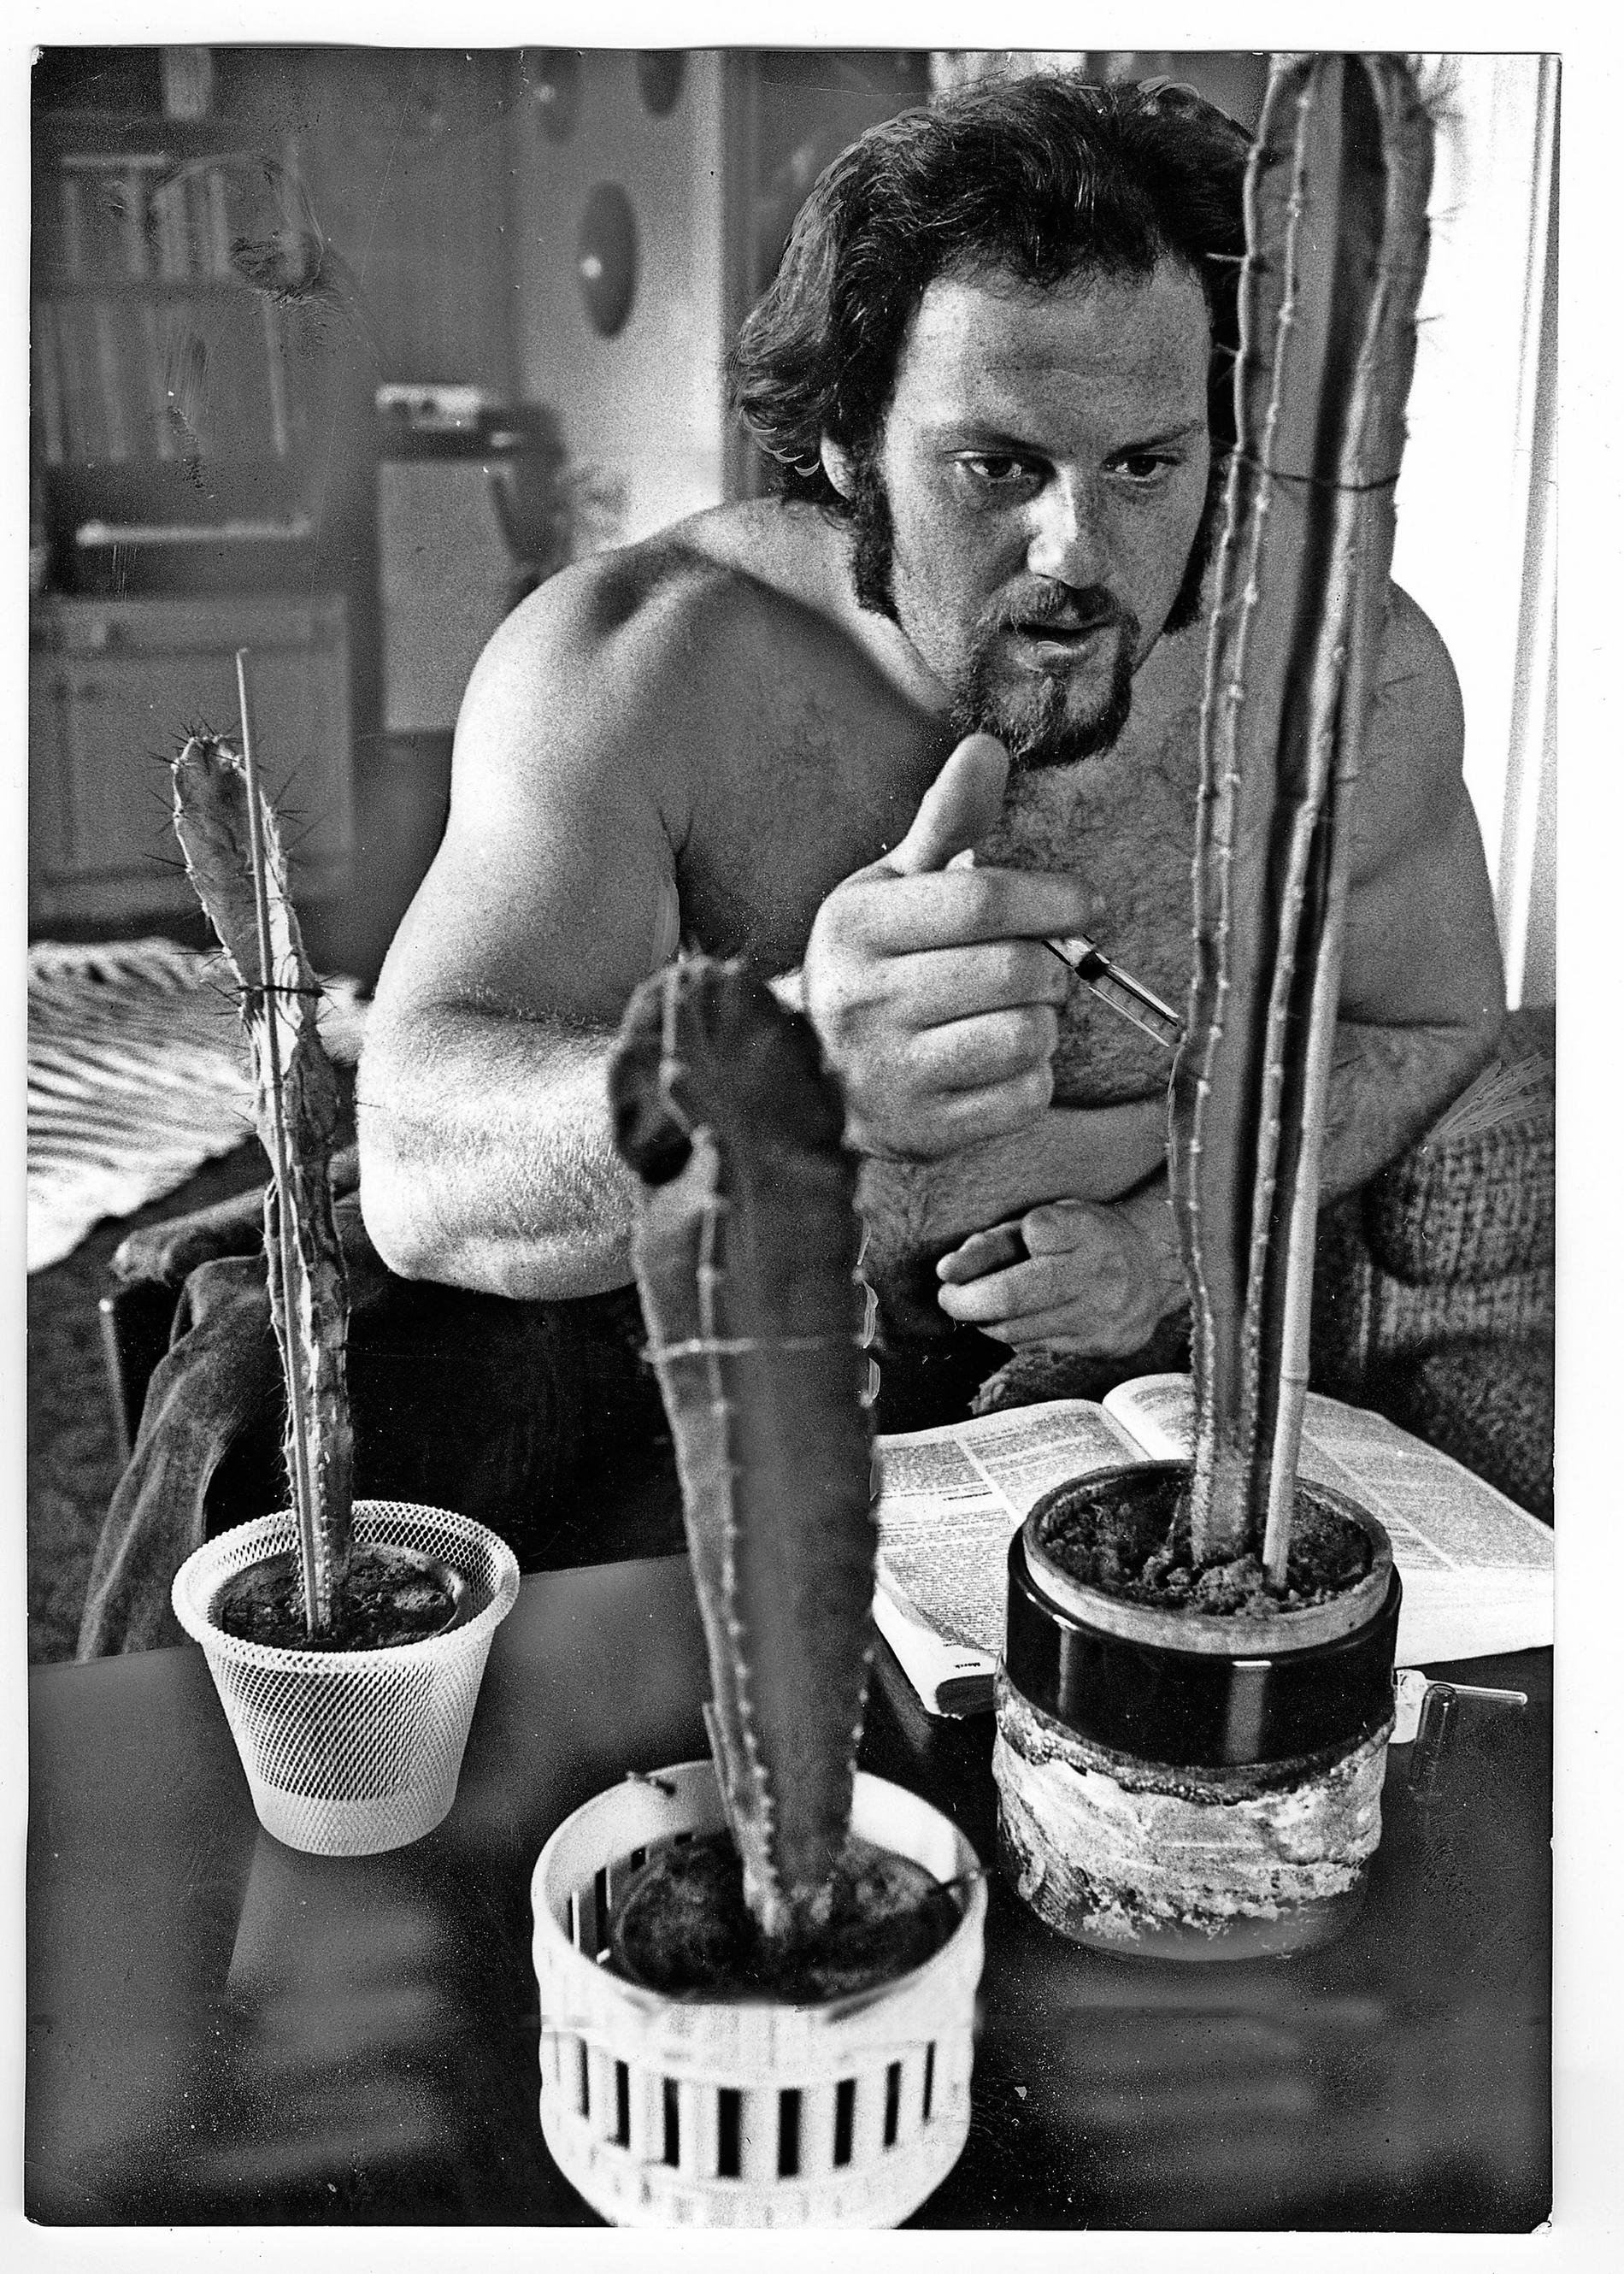 Ricky experimenterade med att dopa i kaktusar. En av dem dog.